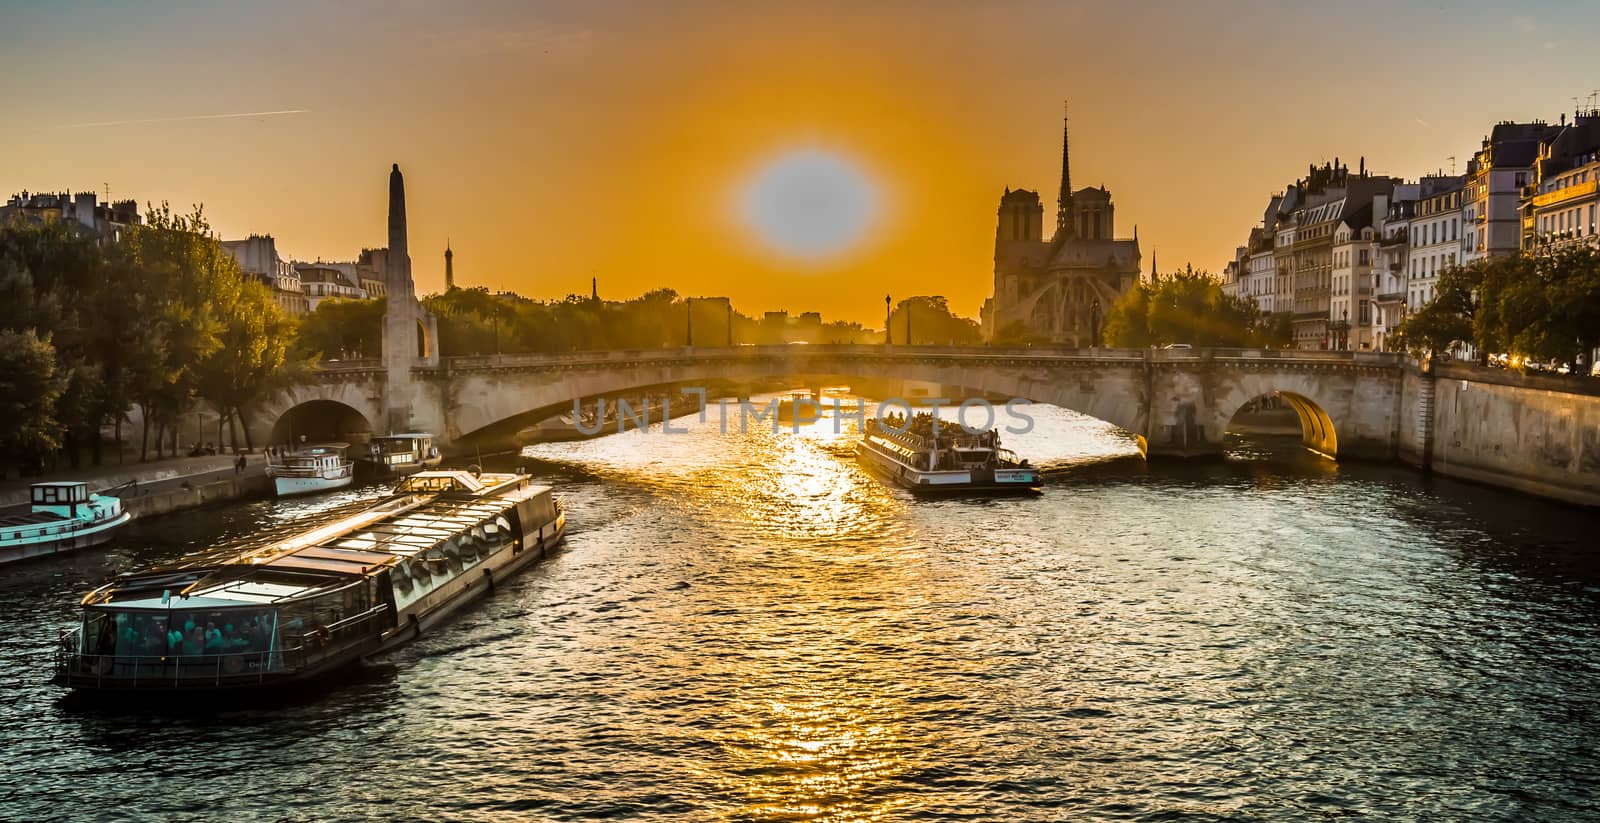 Sunset over Paris bridge and Notre-dame by bignoub